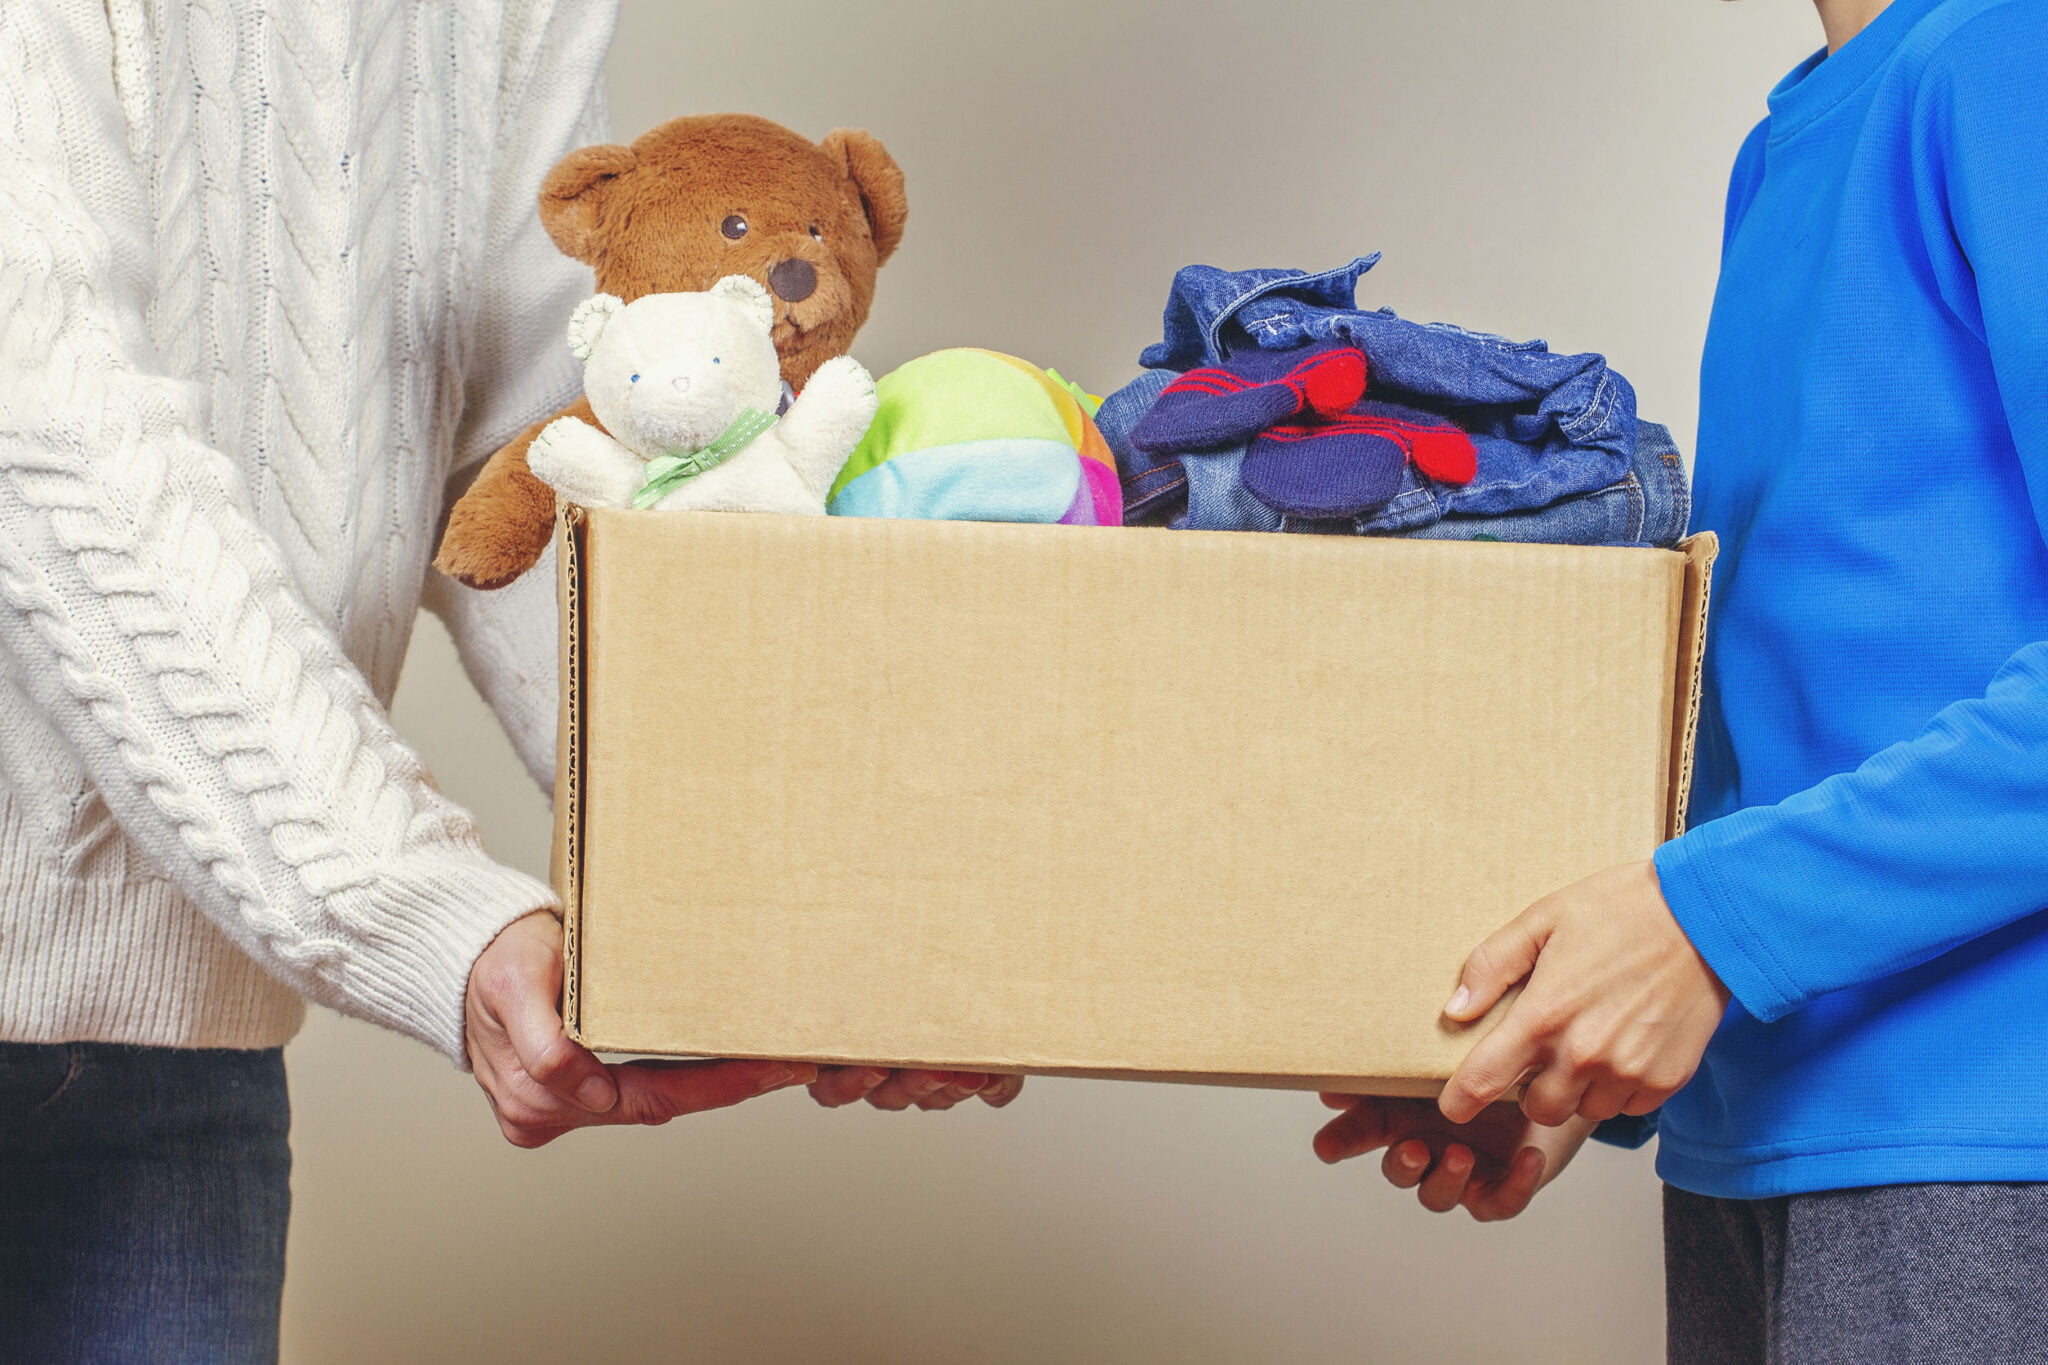 Knuffels doneren en oud speelgoed inleveren goed doel; weggeven aan vluchtelingen of sinterklaas cadeau ah - Mamaliefd.enl